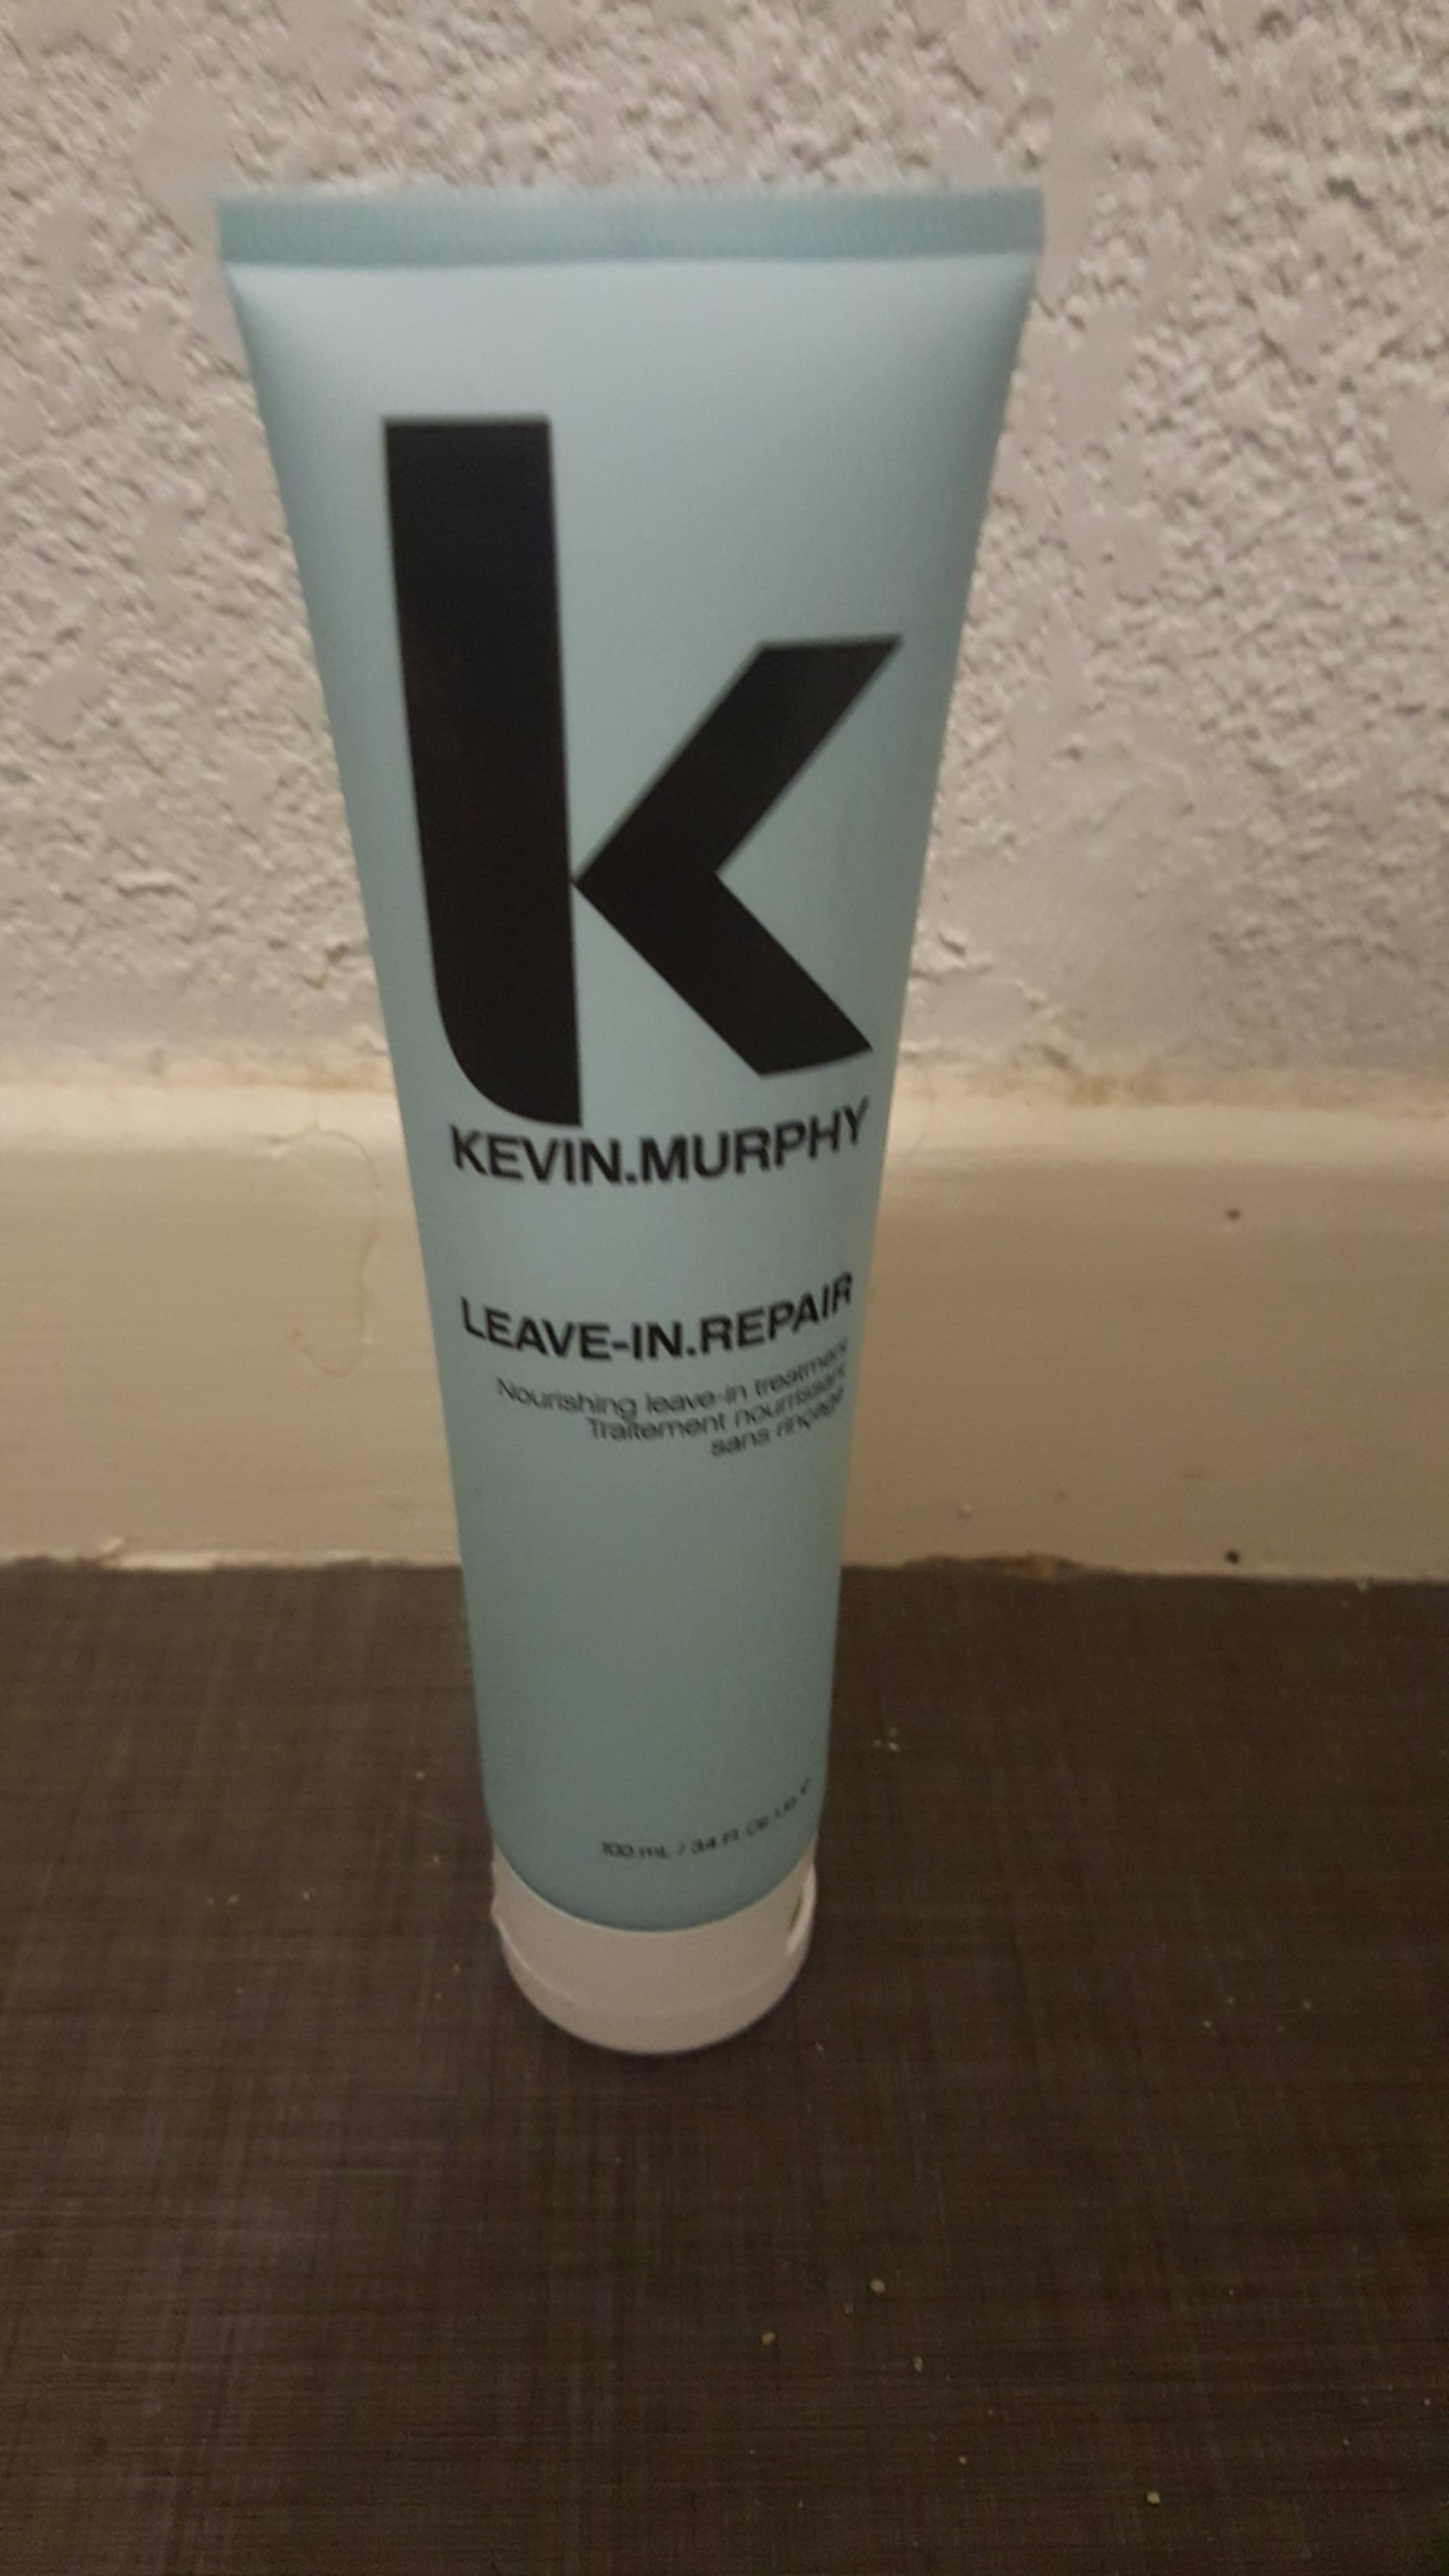 KEVIN MURPHY - Leave-in repair - Traitement nourrissant sans rinçage